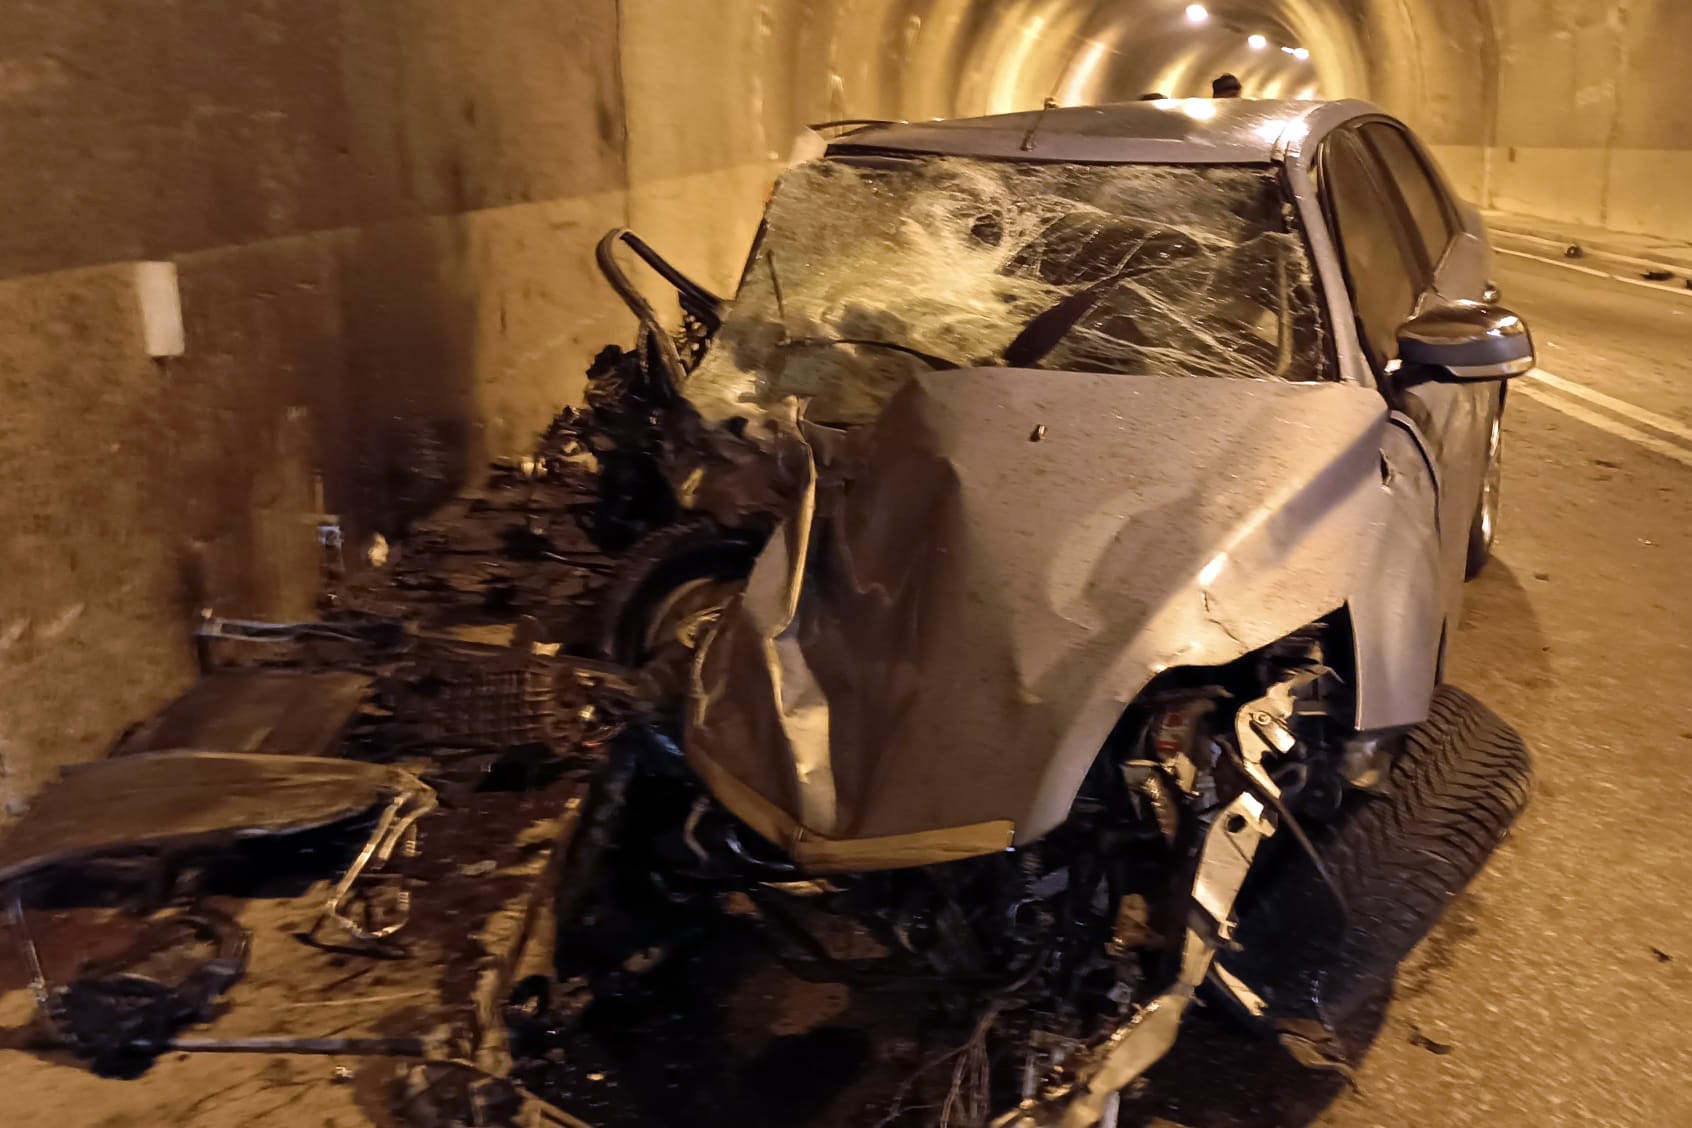 Gümüşhane’nin Kürtün ilçesinde tünel içinde otomobil ile bir tır çarpıştığı kazada 2 kişi yaralandı.